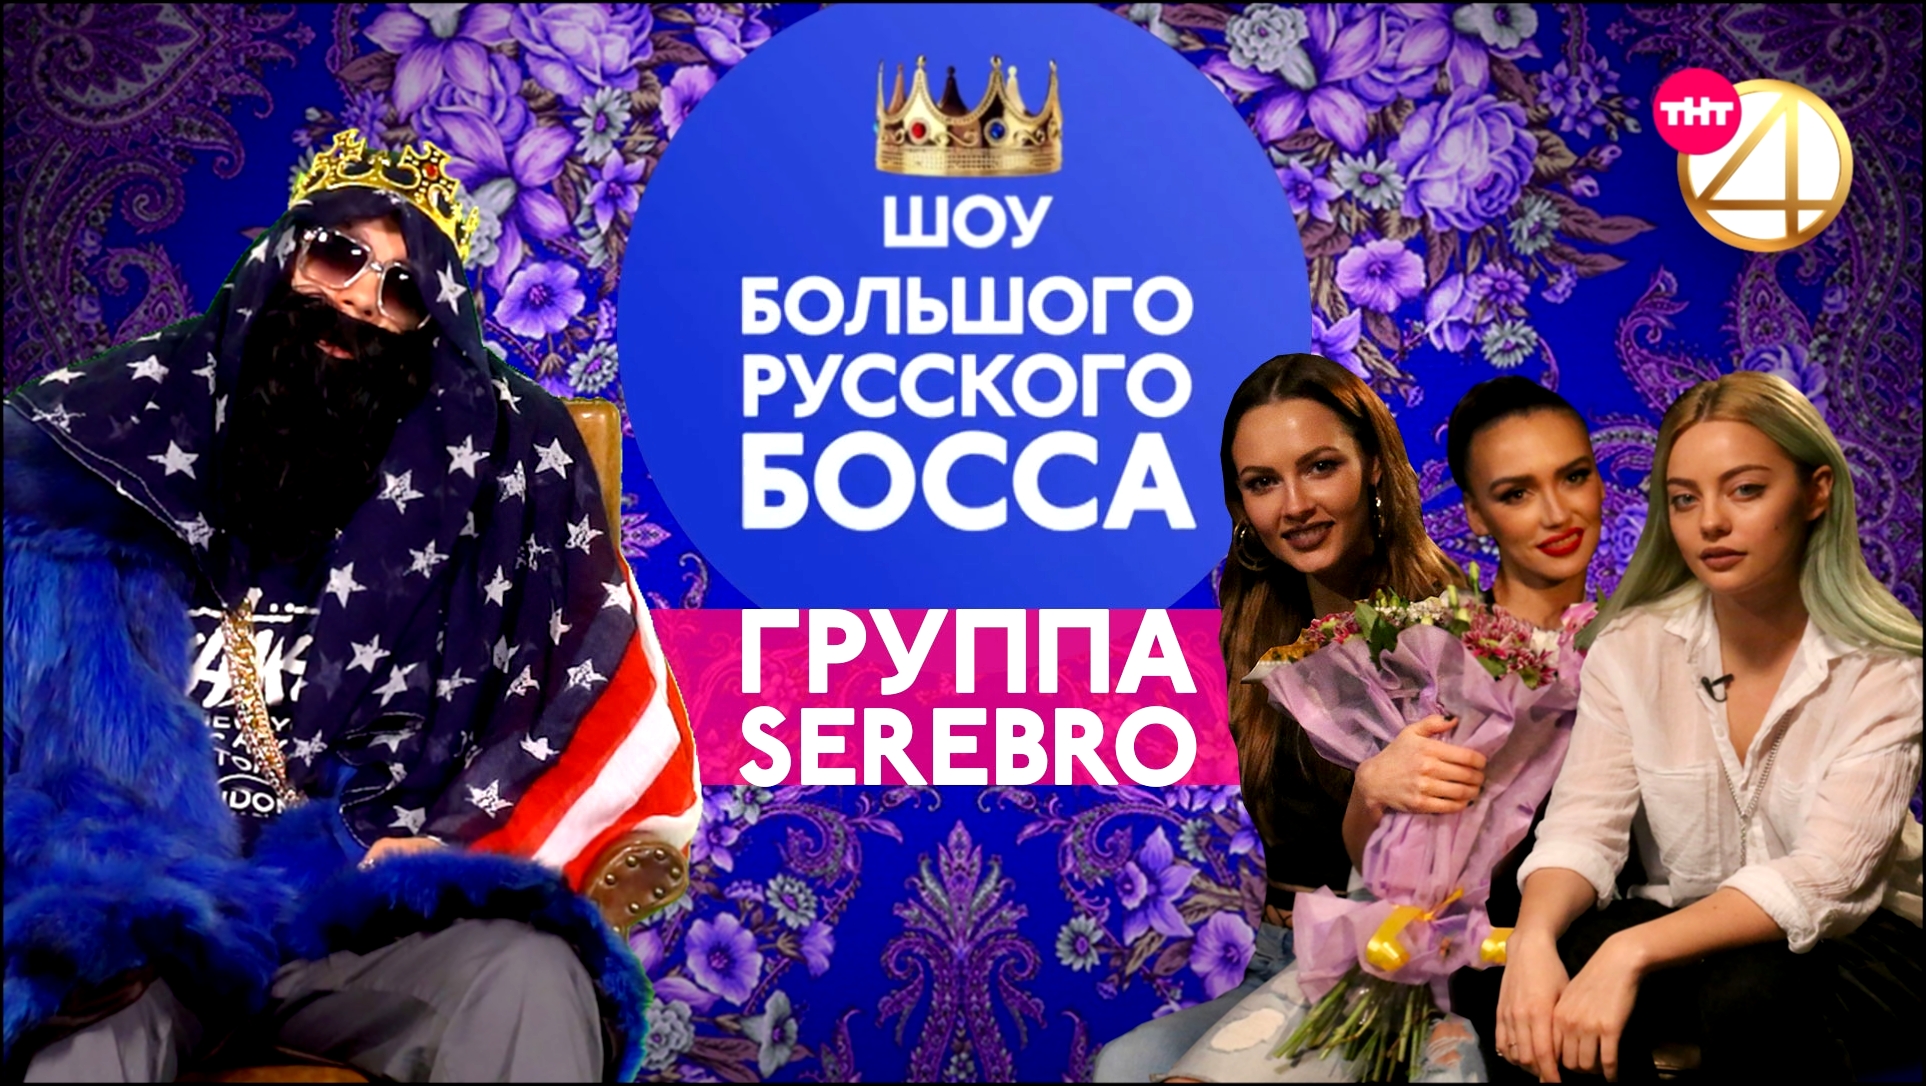 Подборка BIG RUSSIAN BOSS SHOW, 1 сезон, 3 серия (Serebro)